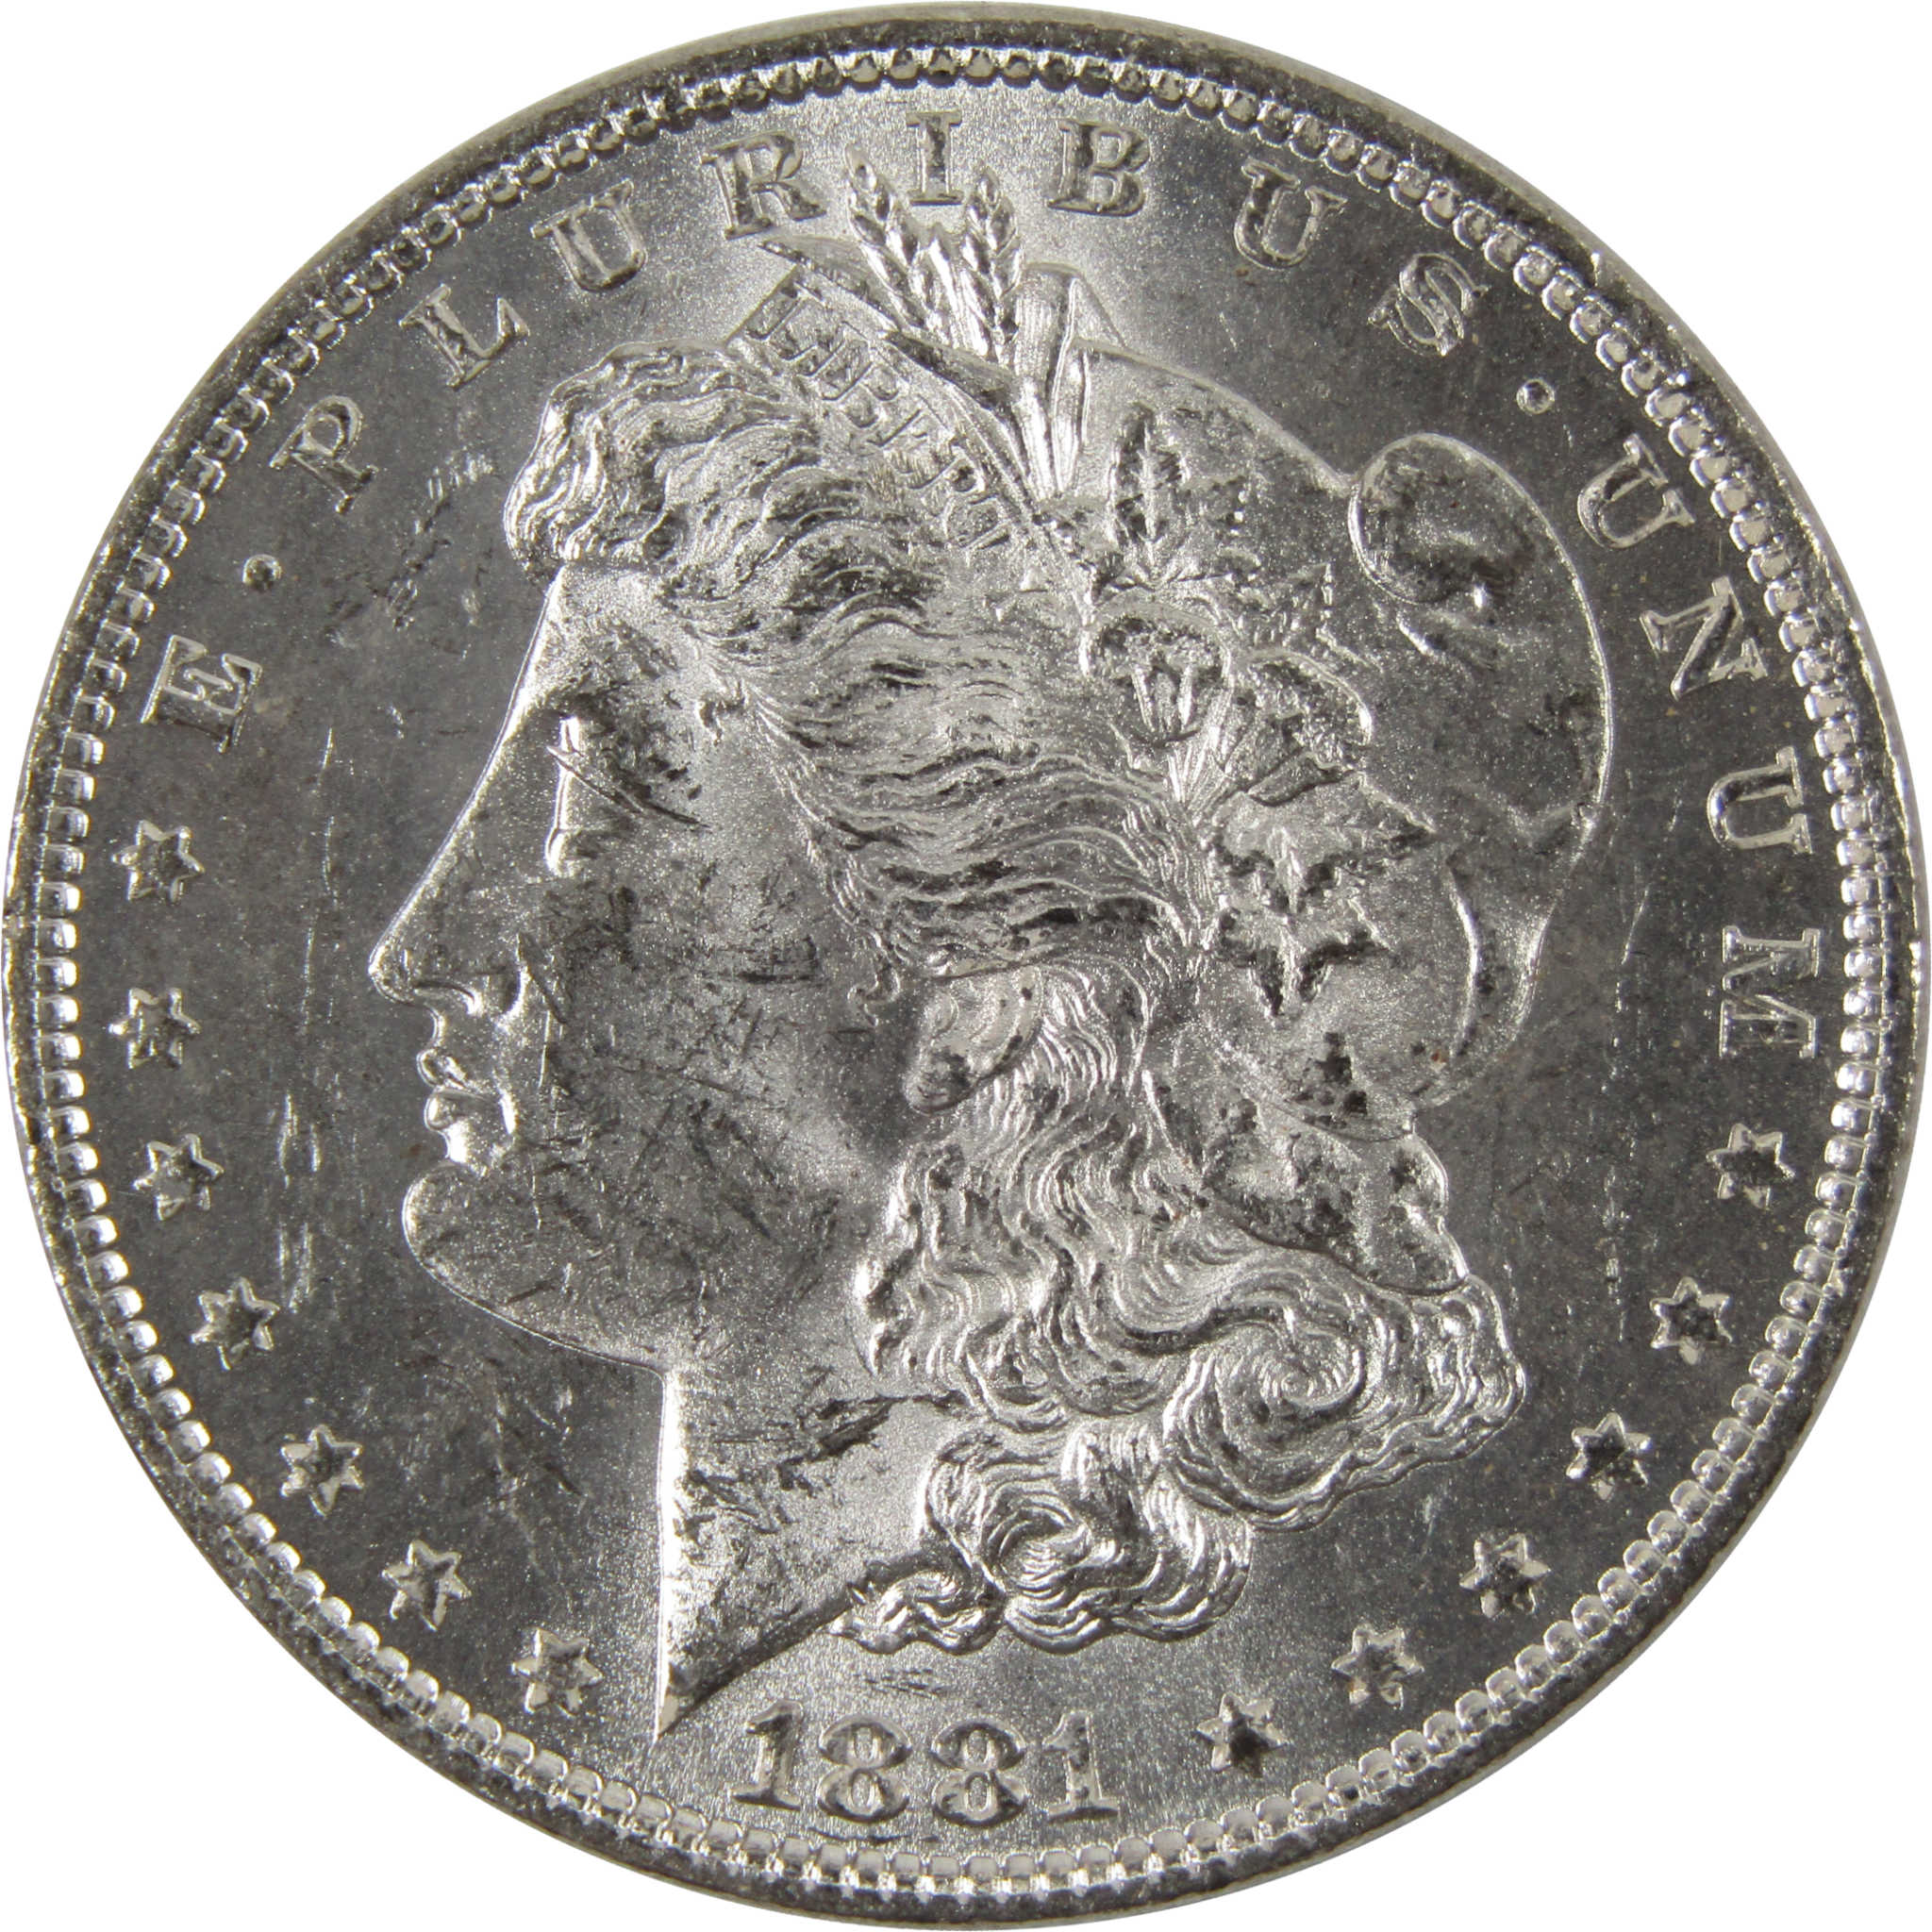 1881 O Morgan Dollar BU Uncirculated 90% Silver $1 Coin SKU:I8483 - Morgan coin - Morgan silver dollar - Morgan silver dollar for sale - Profile Coins &amp; Collectibles